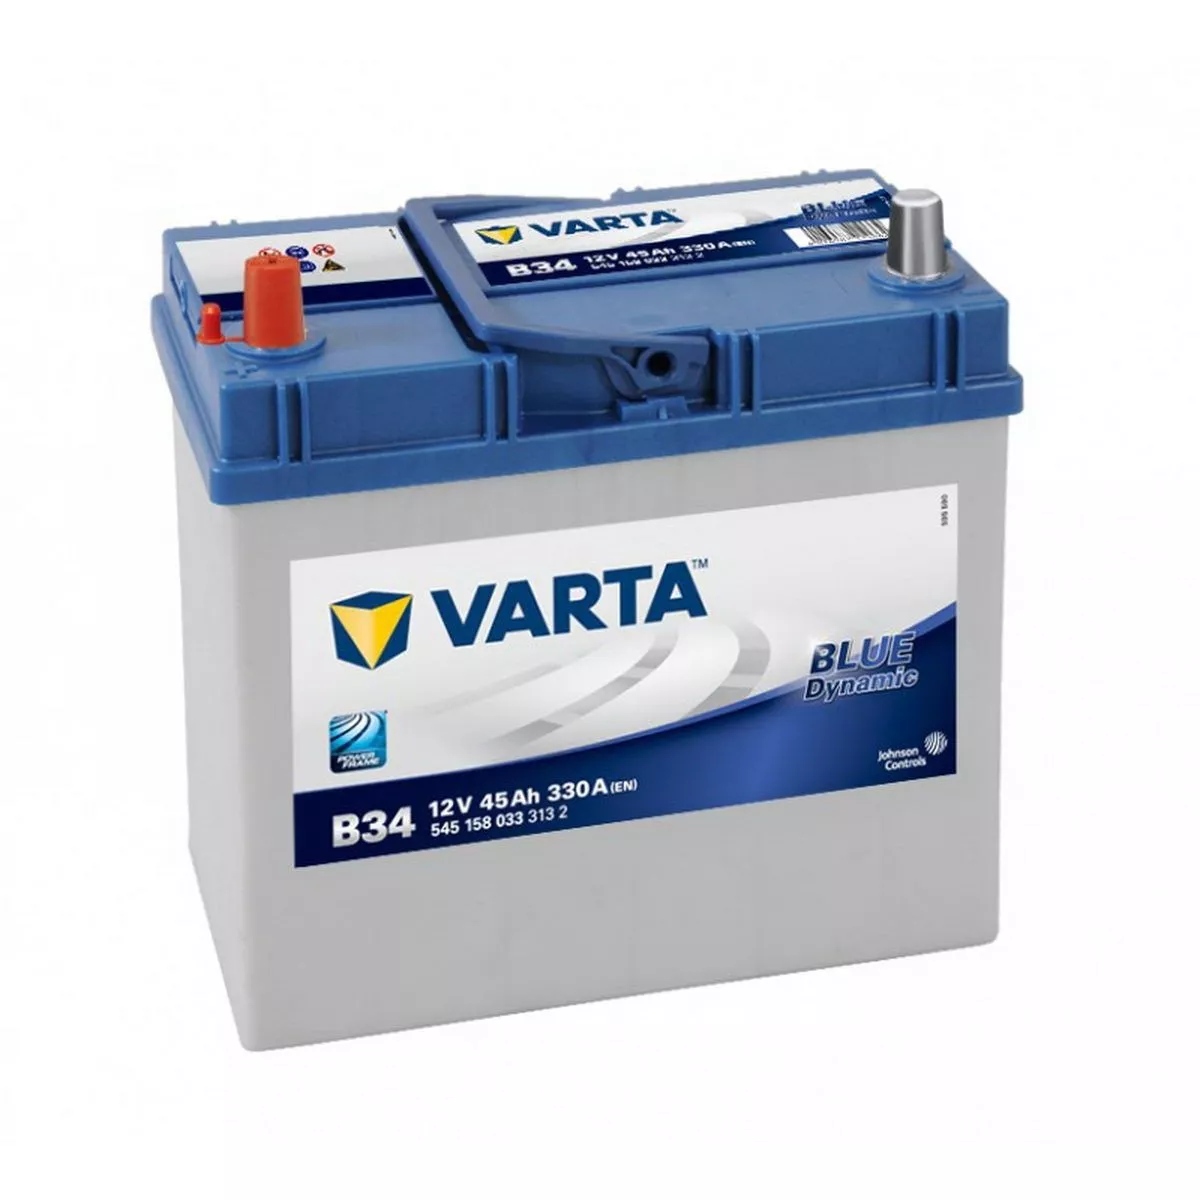 Varta asia. Varta 560410054. 545157033 Varta. Автомобильный аккумулятор Varta Blue Dynamic d48. Аккумулятор варта 40ач.